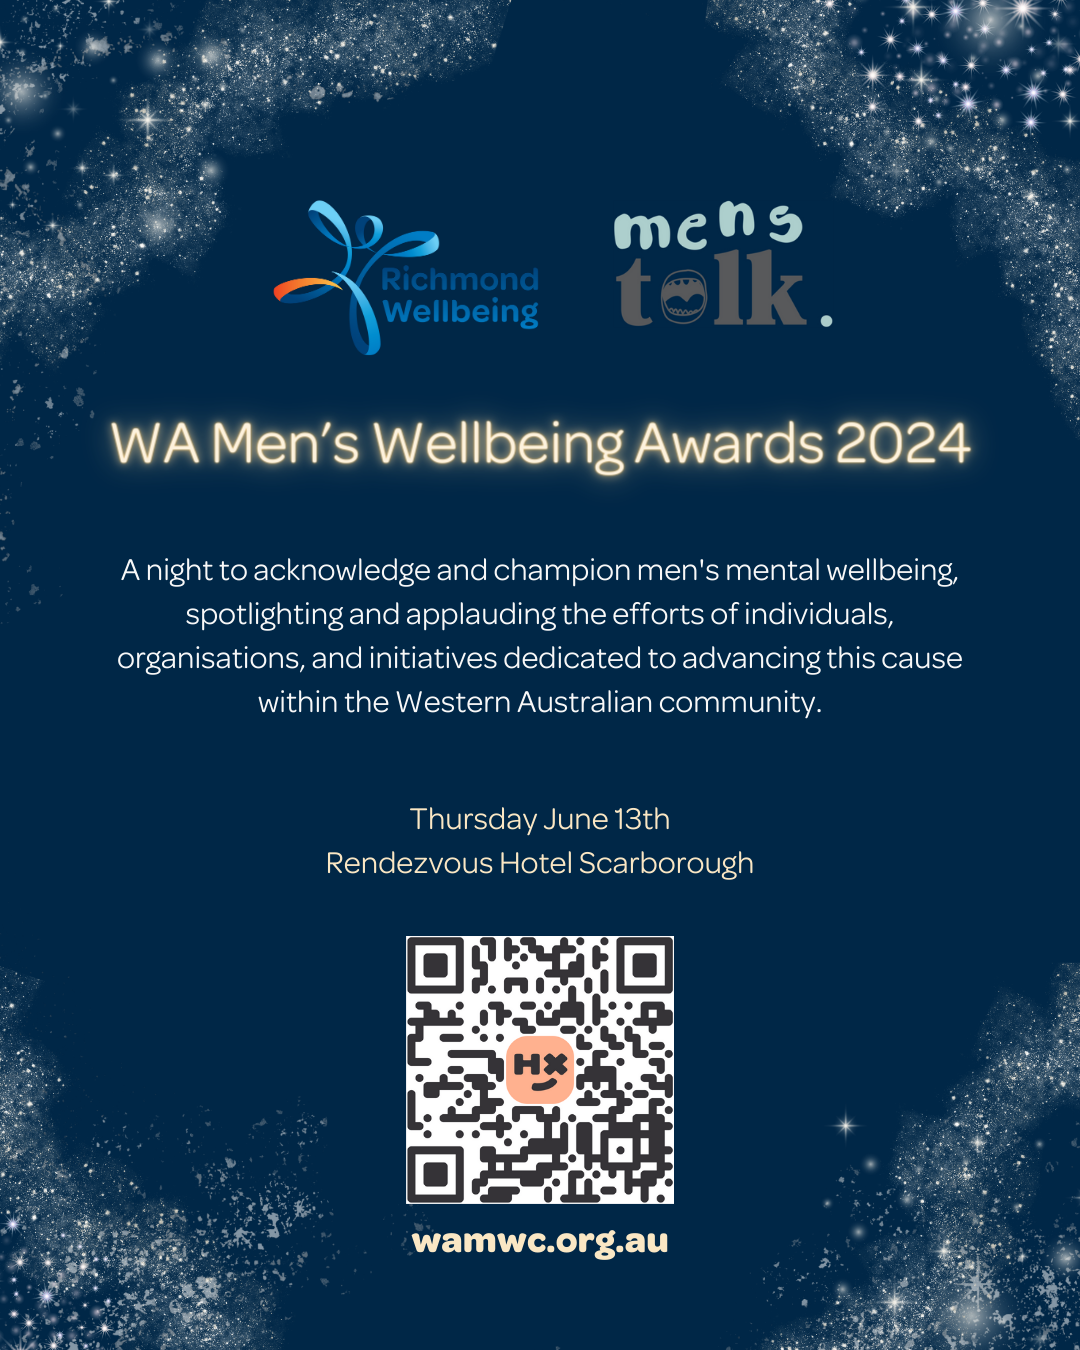 Richmond Wellbeing & Men's Talk Present the Men's Wellbeing Awards Night